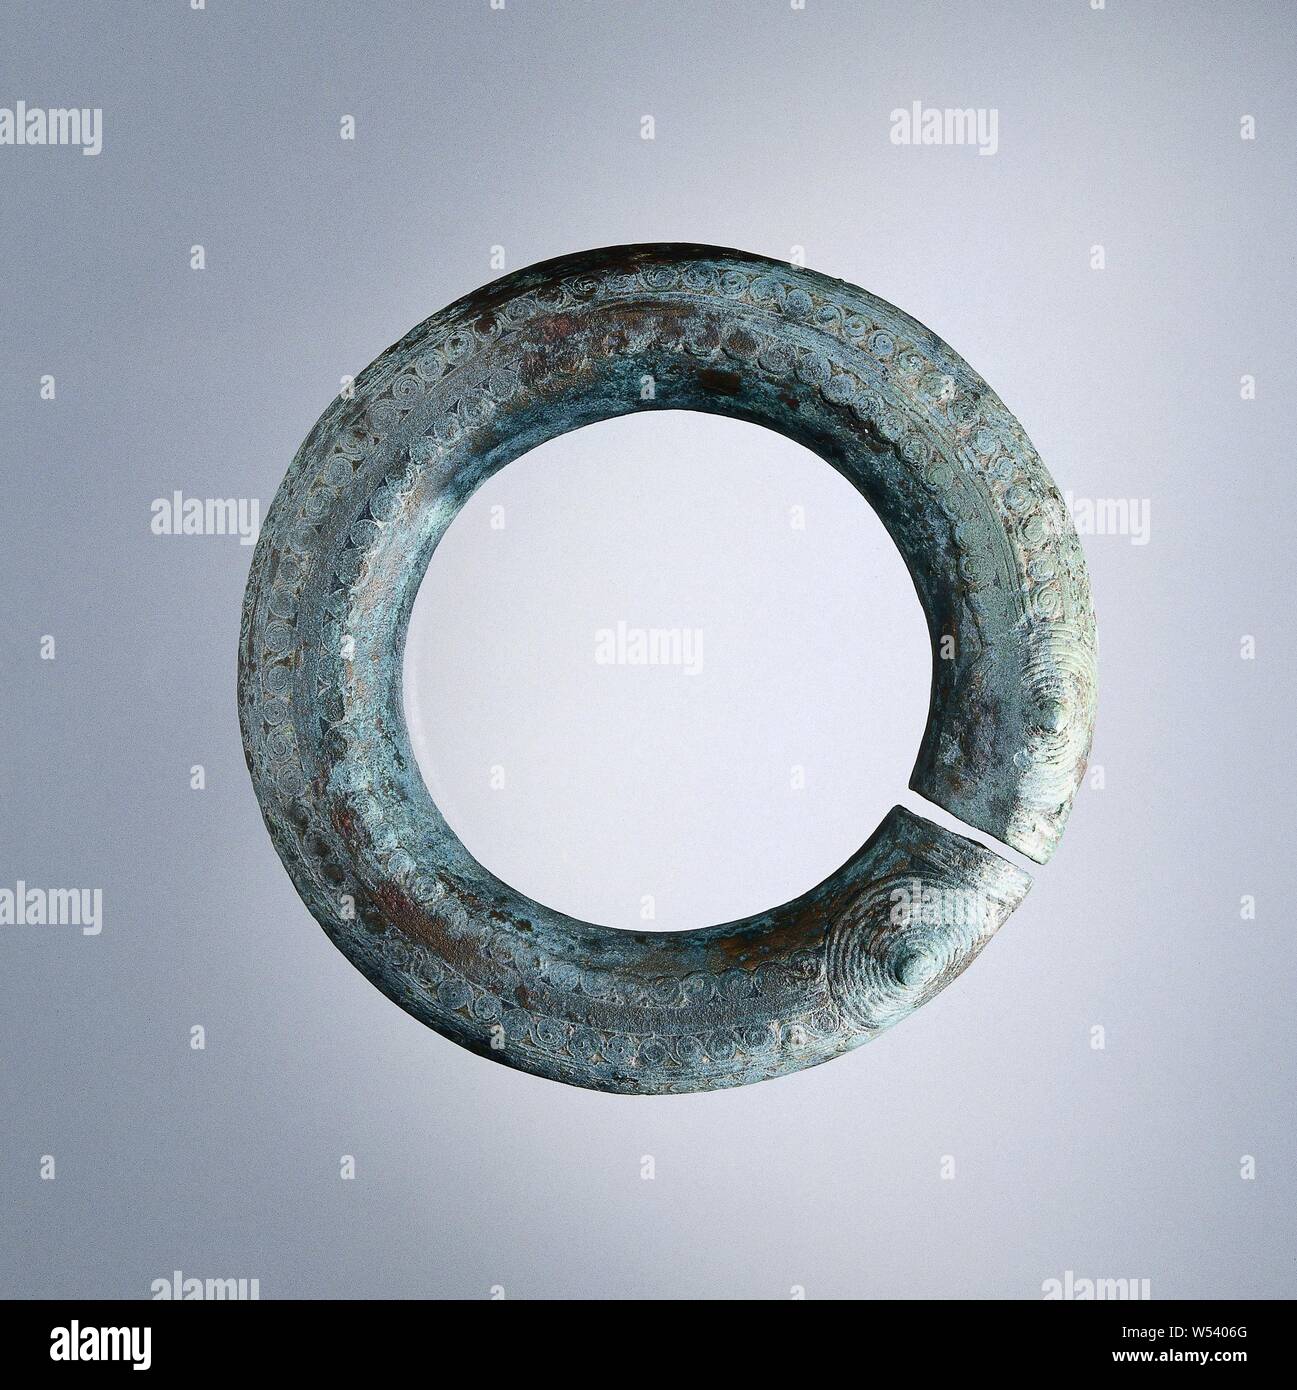 Armband, Armband in Form einer Schlange mit zwei Köpfe zusammen., anonym, Ban Chiang, -600--100, bronze (Metall), d 9,8 cm x H 1,8 cm Stockfoto